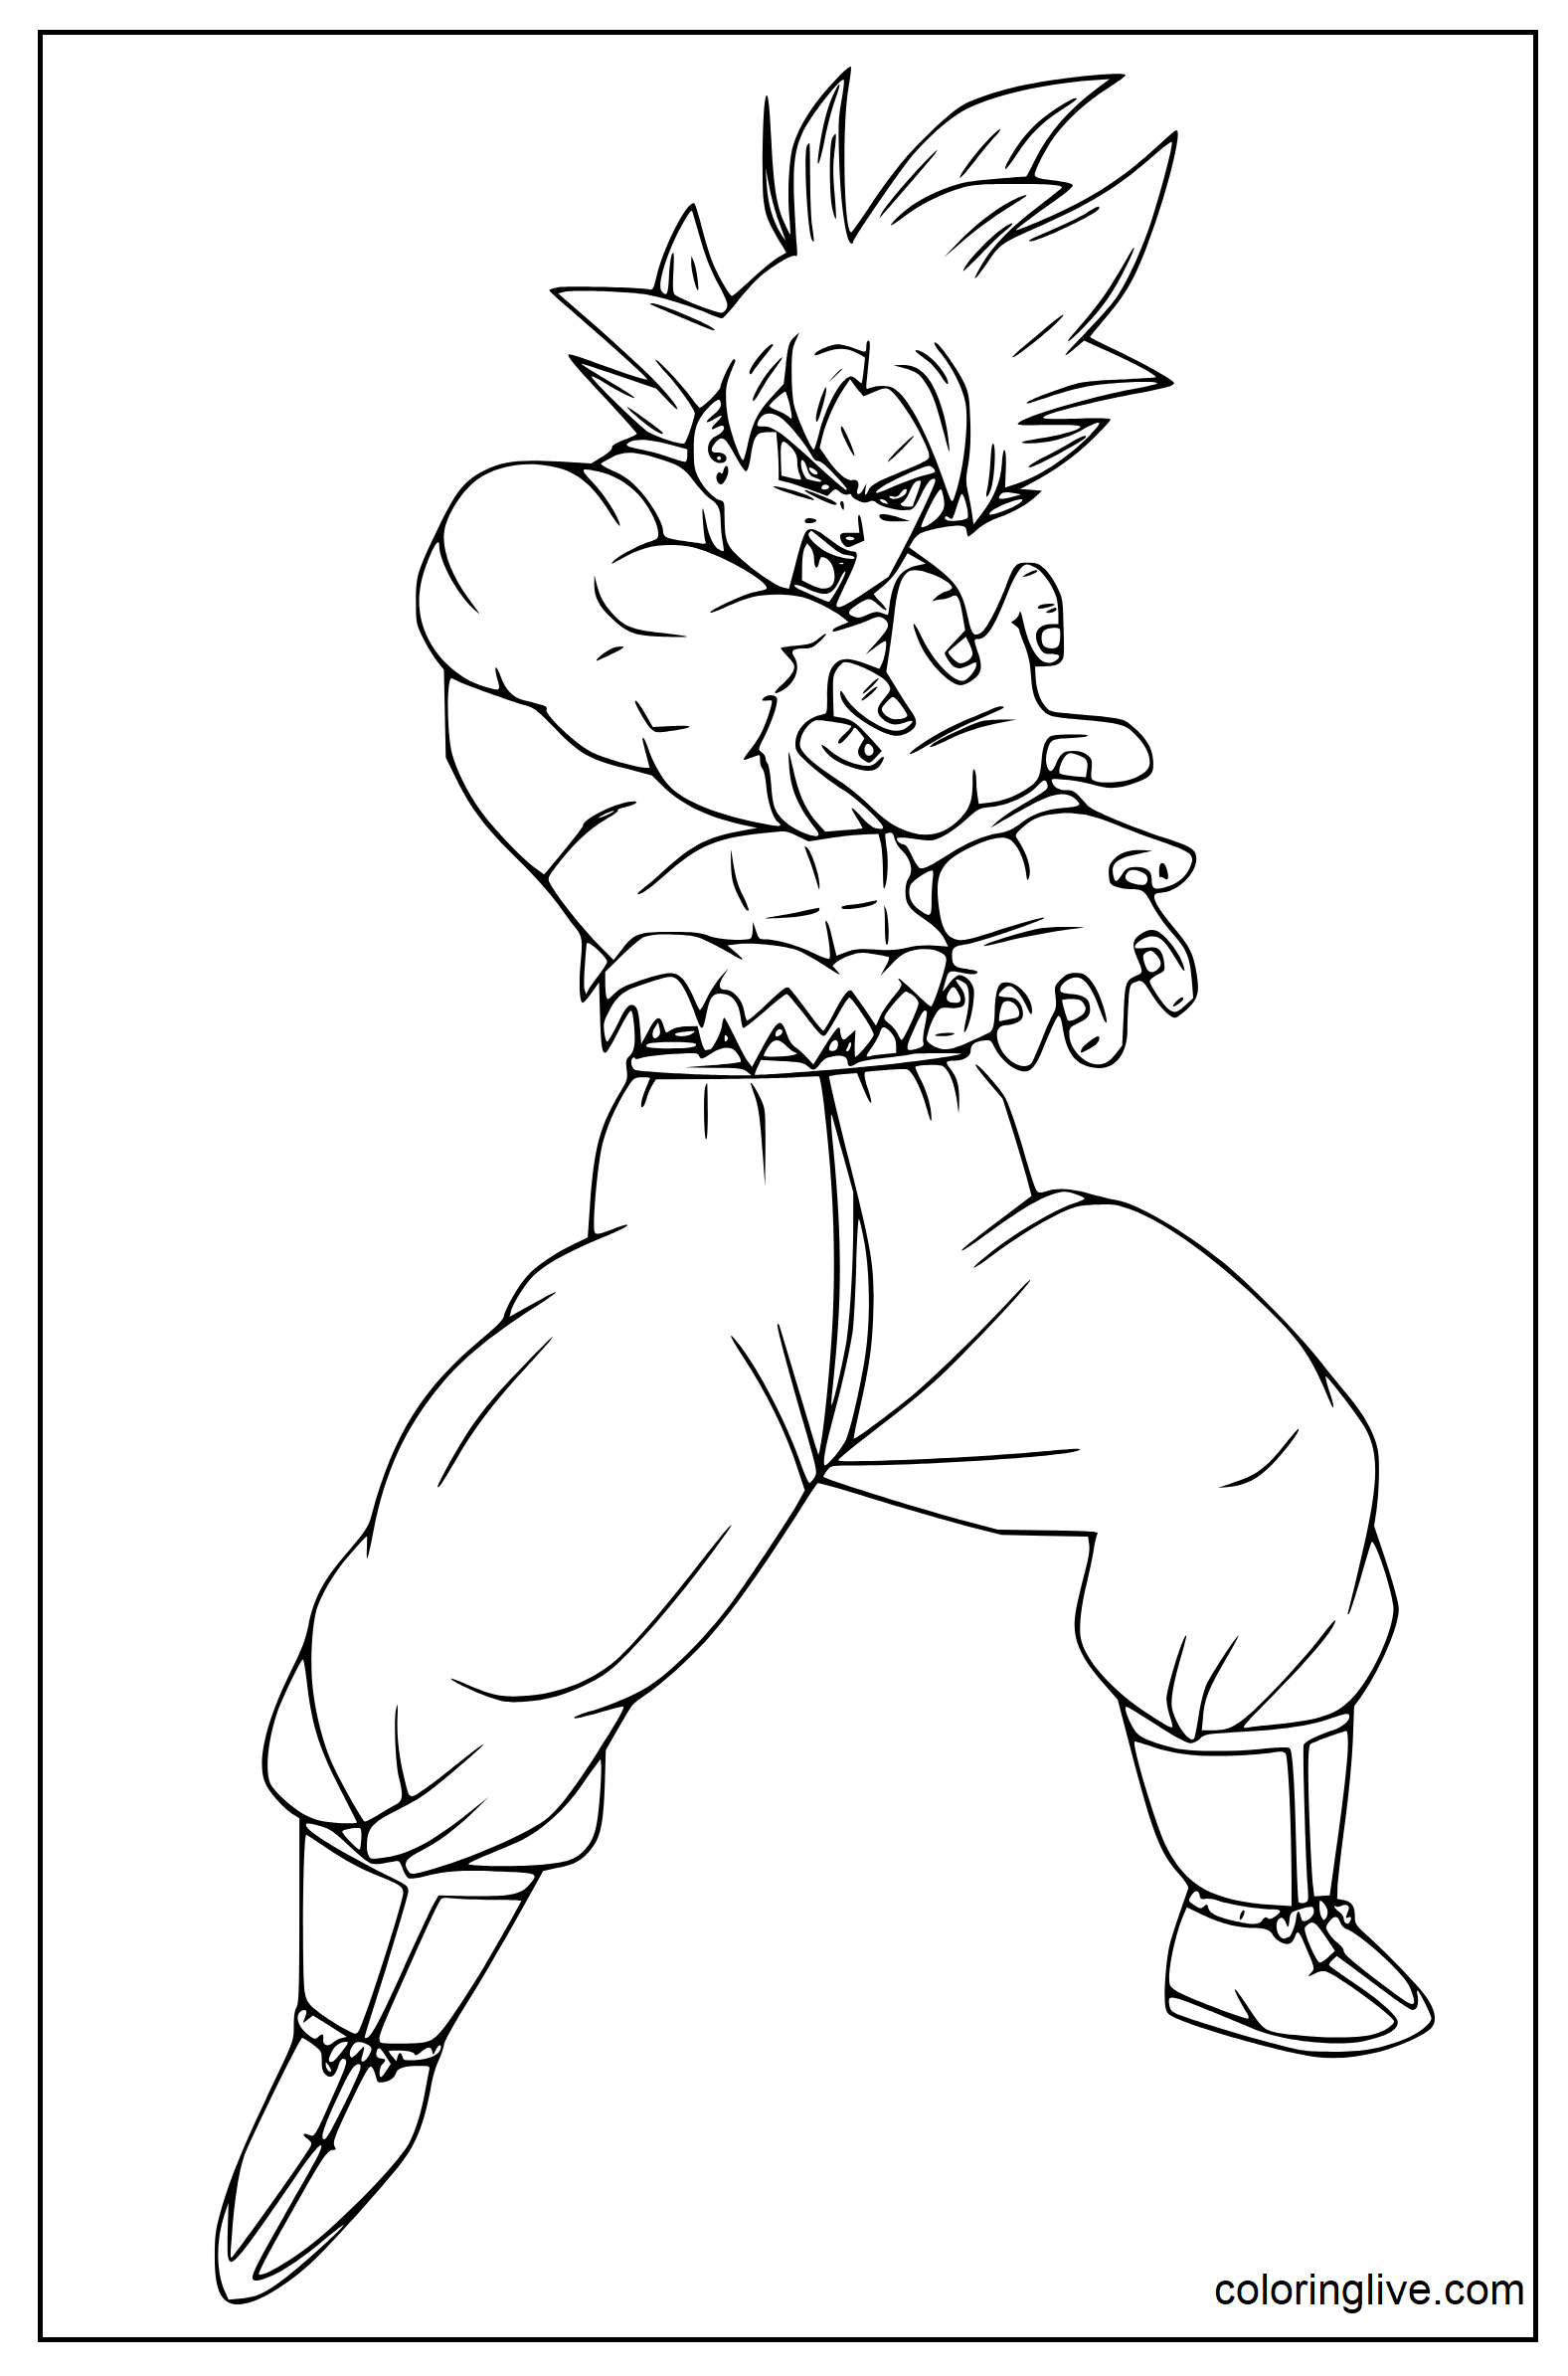 Printable Goku fighting Coloring Page for kids.